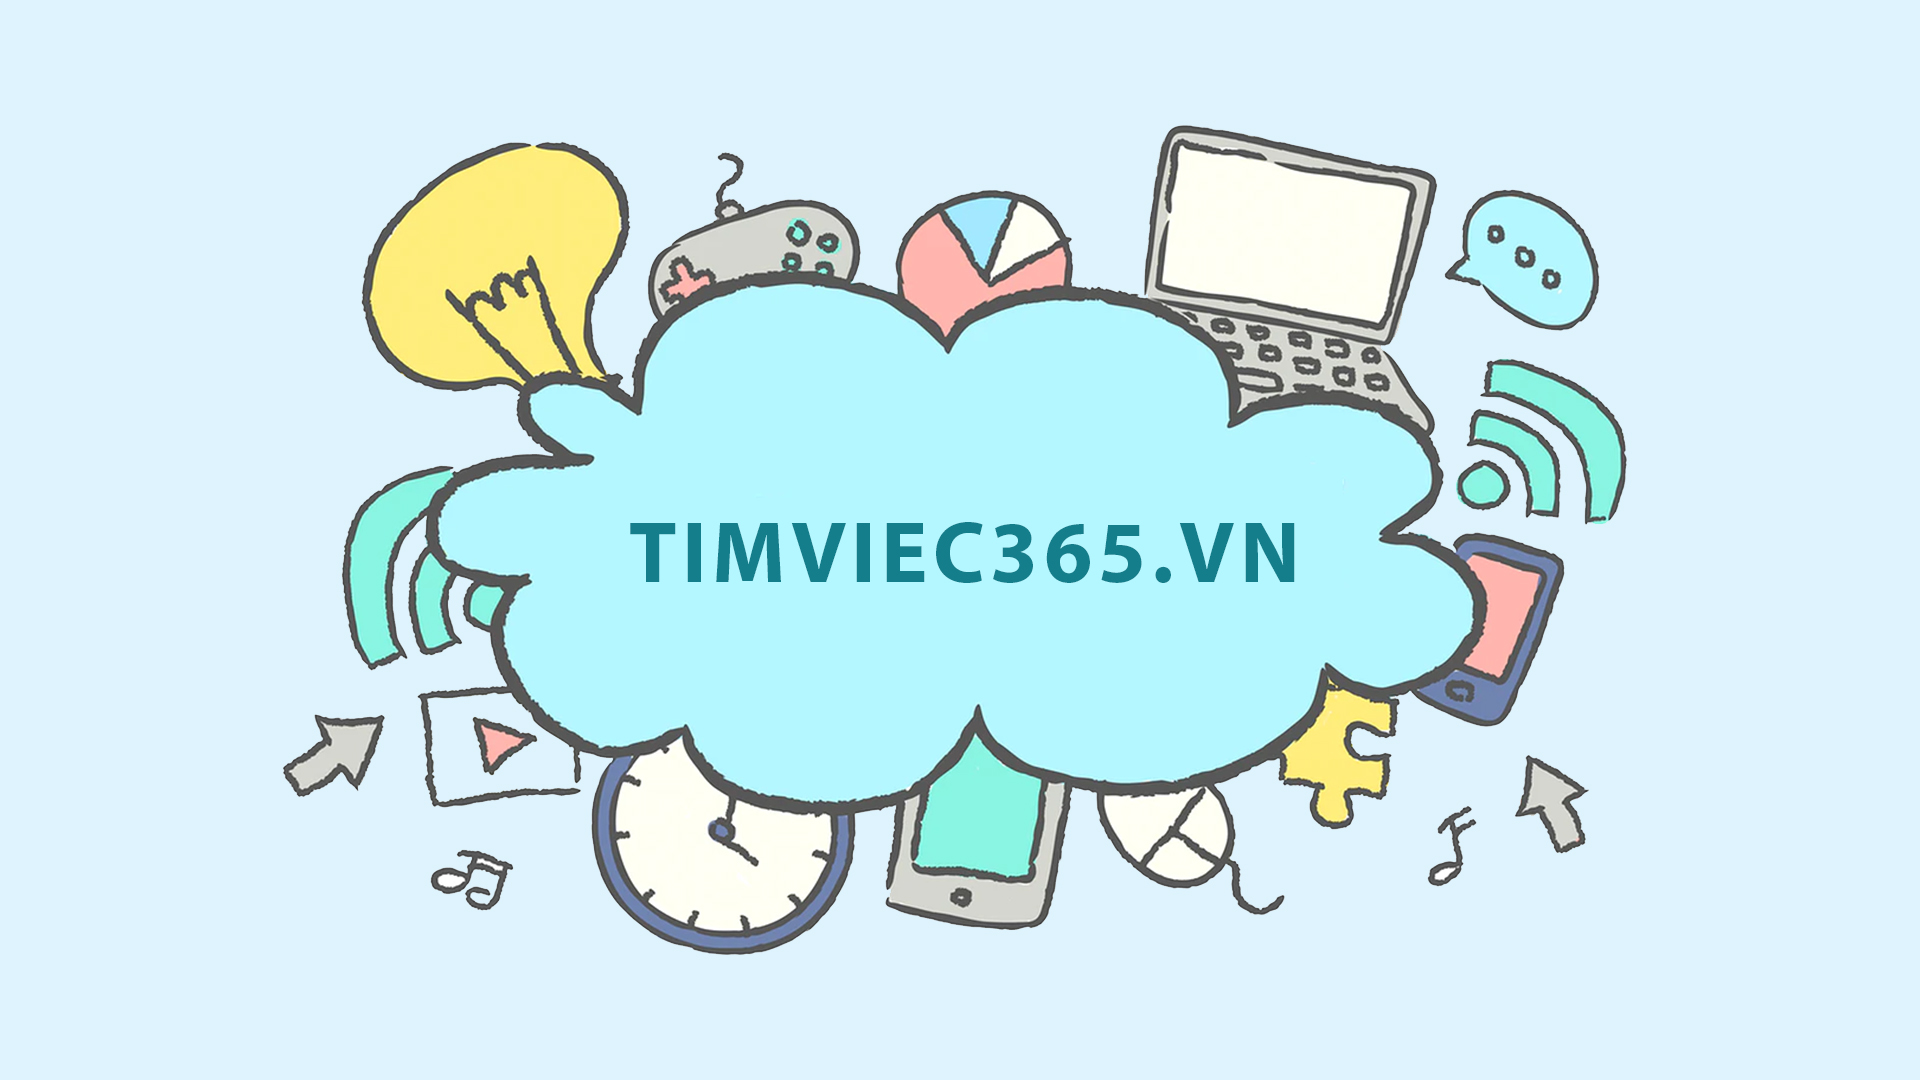  Trang timviec365.vn địa chỉ uy tín cho ứng viên và nhà tuyển dụng